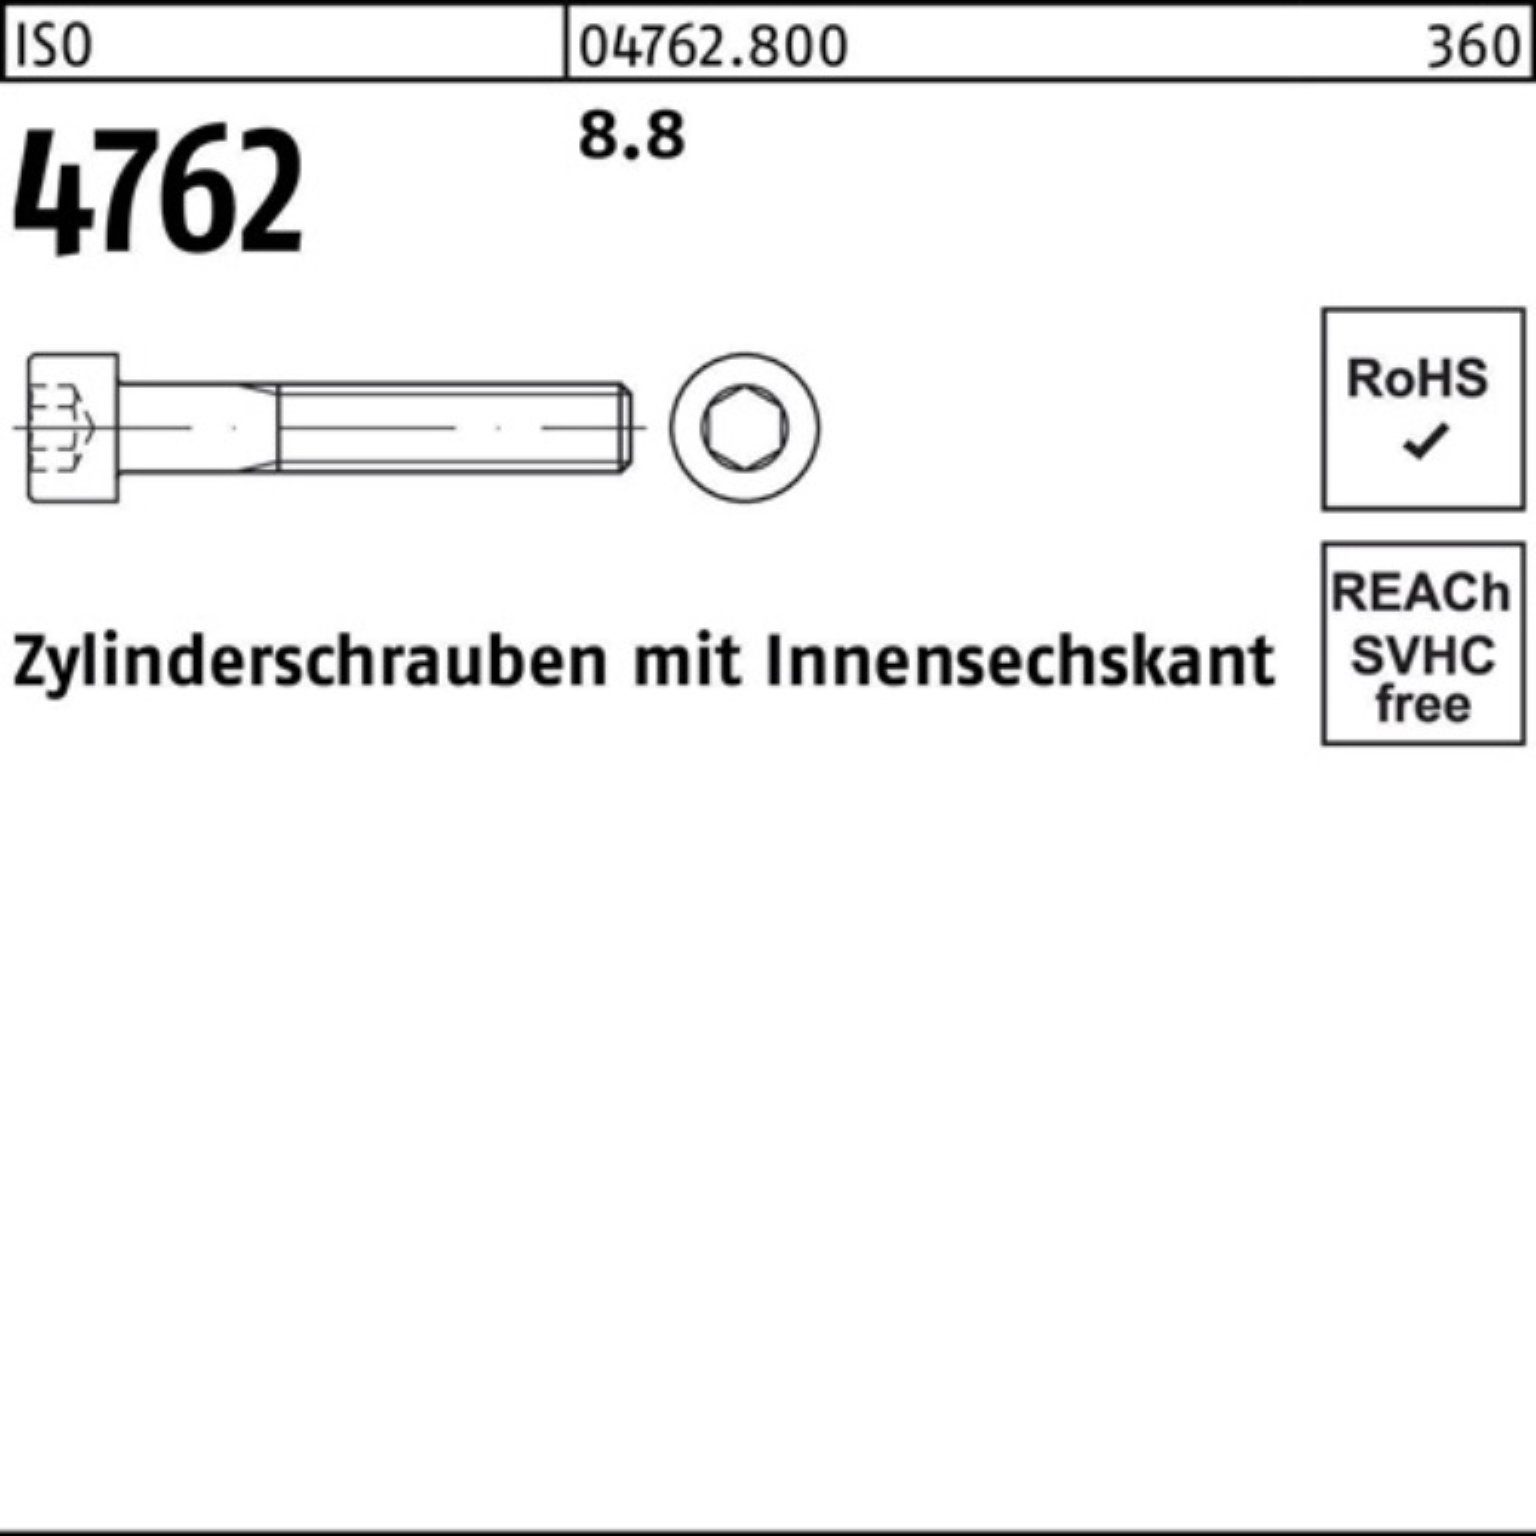 4762 Pack Zylinderschraube Innen-6kt I M27x 8.8 Zylinderschraube 100er Reyher Stück 1 300 ISO